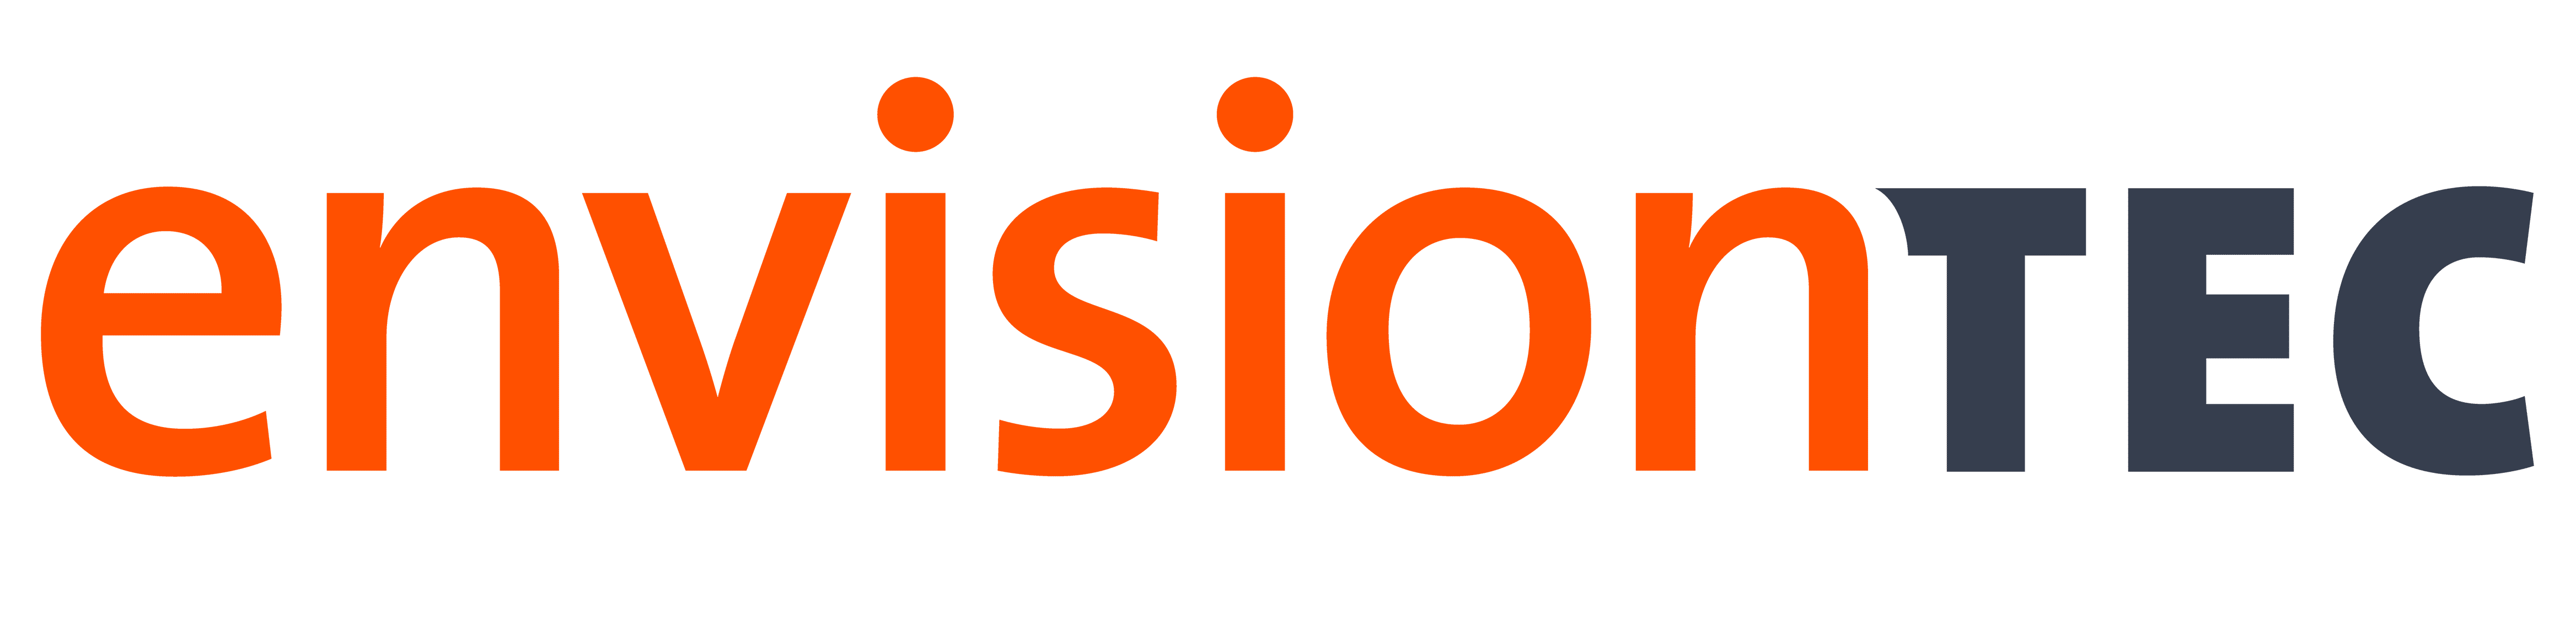 envisiontec-master-logo_2019